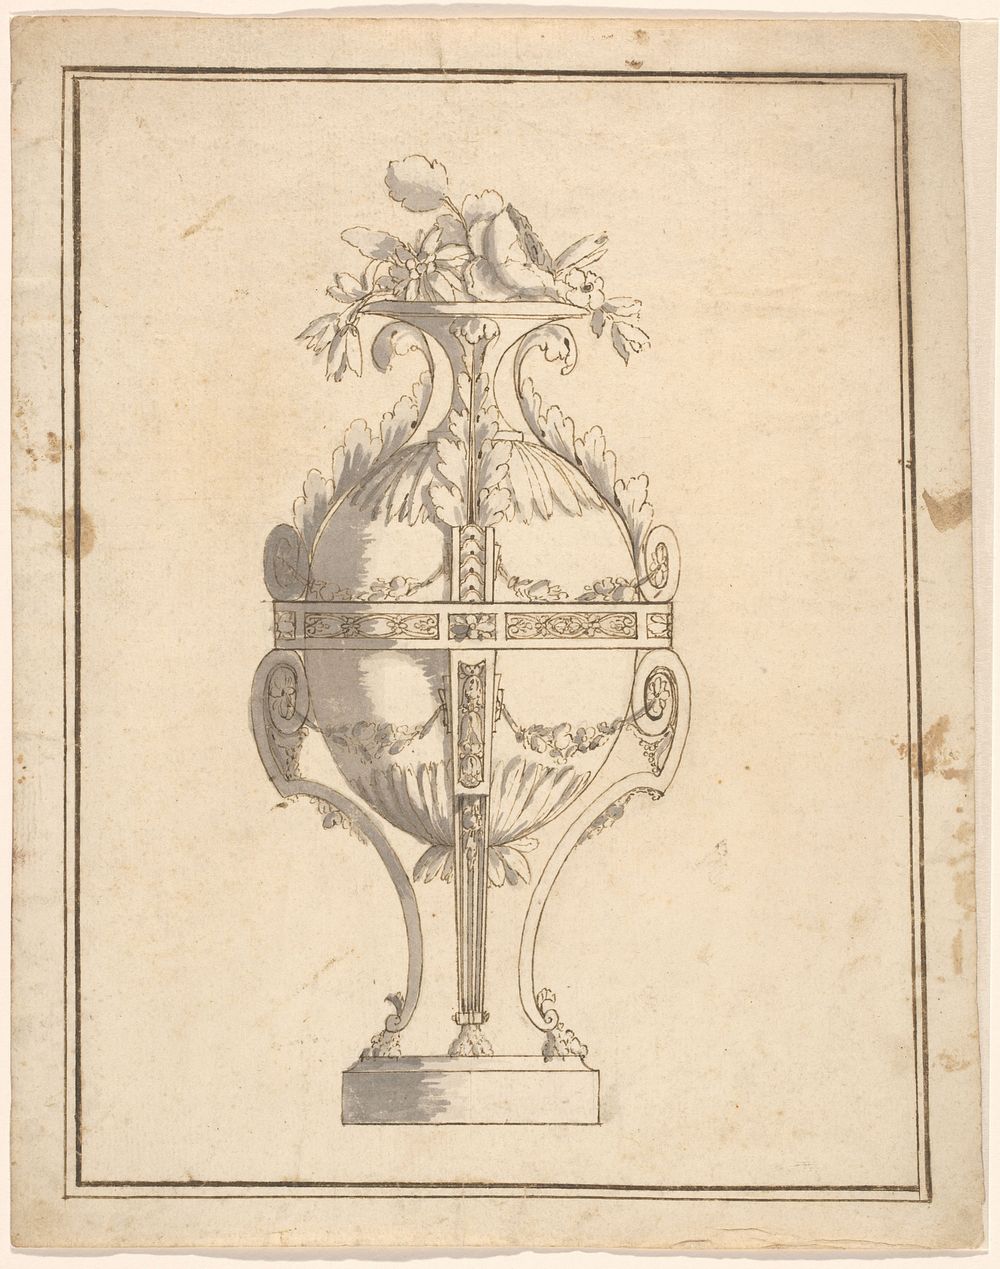 Eivormige vaas in een montuur met leeuwenpoten en bladeren (c. 1775 - c. 1785) by anonymous